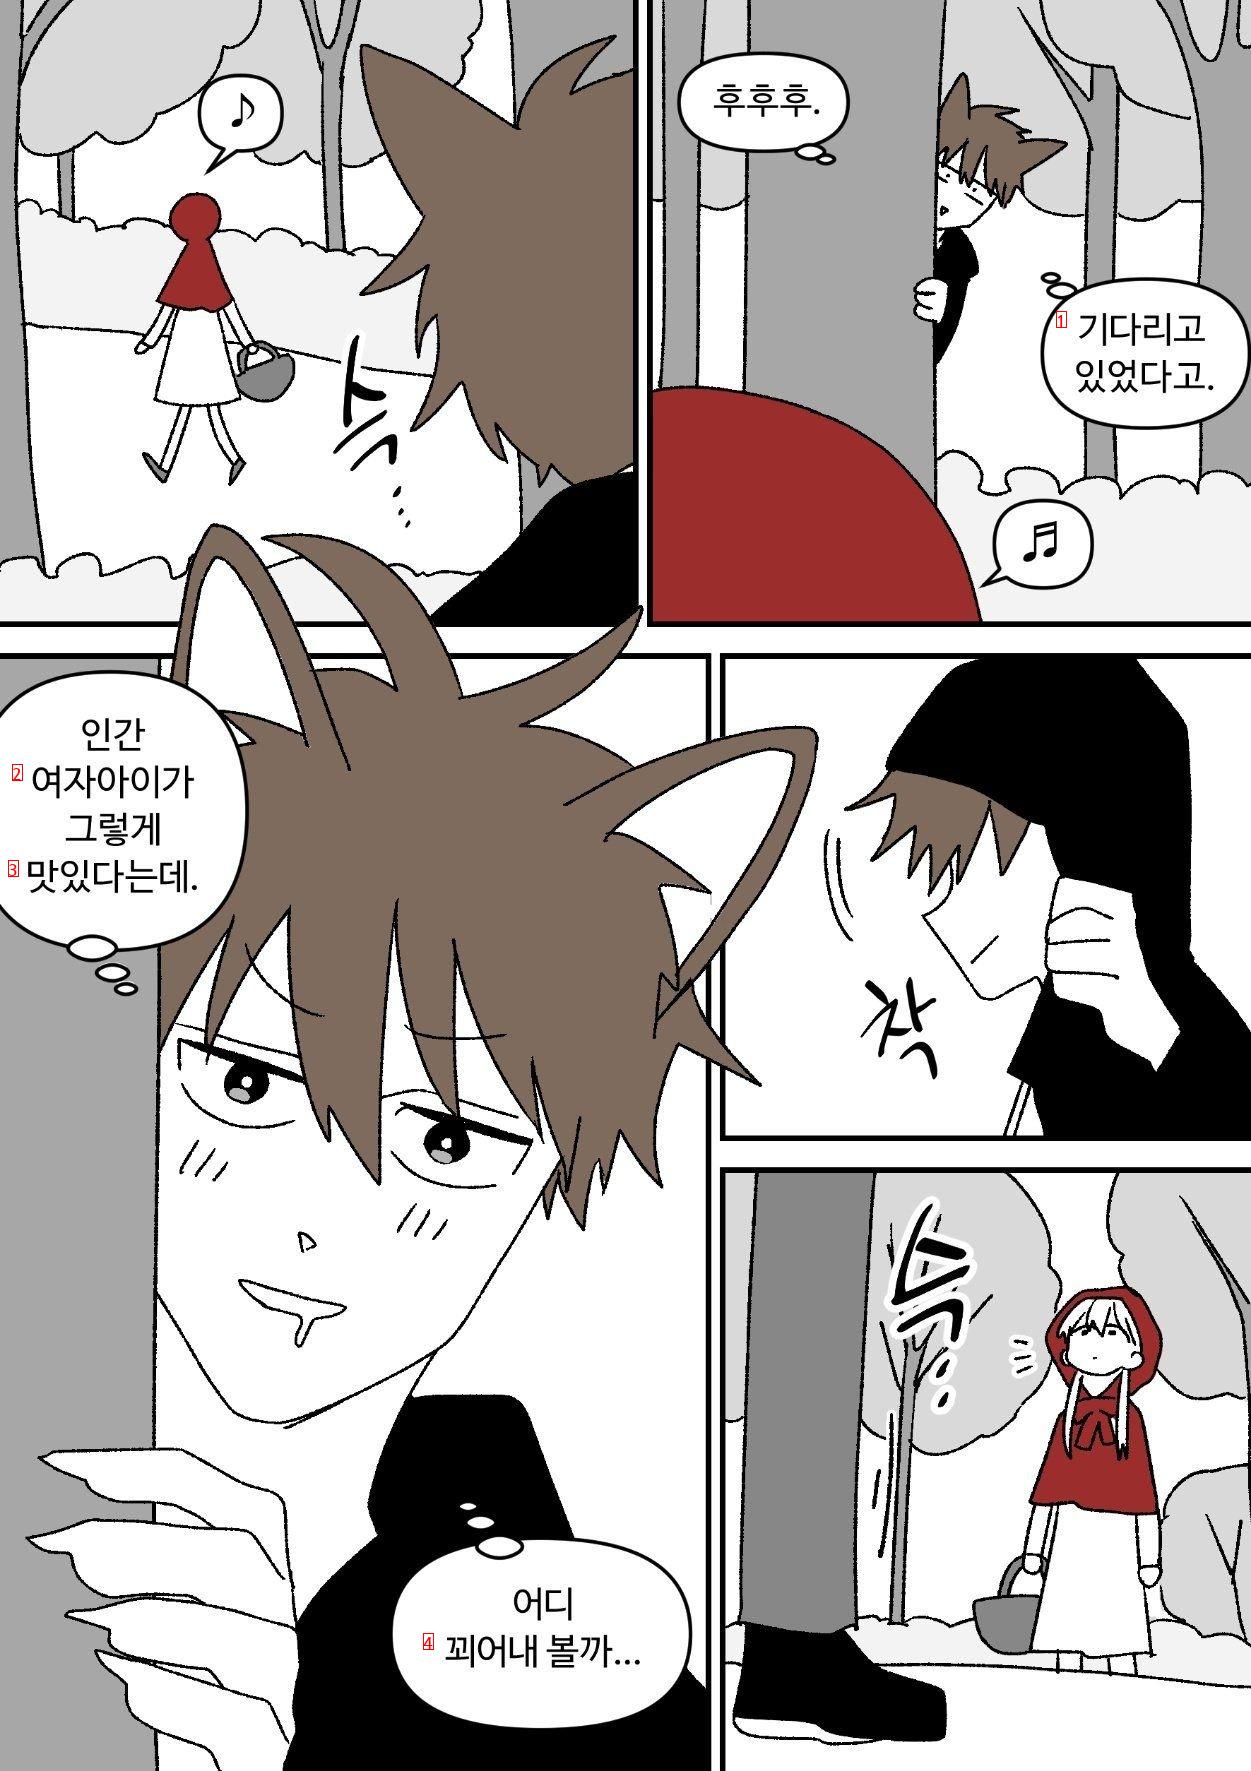 赤いマントがオオカミを食べる漫画manhwa